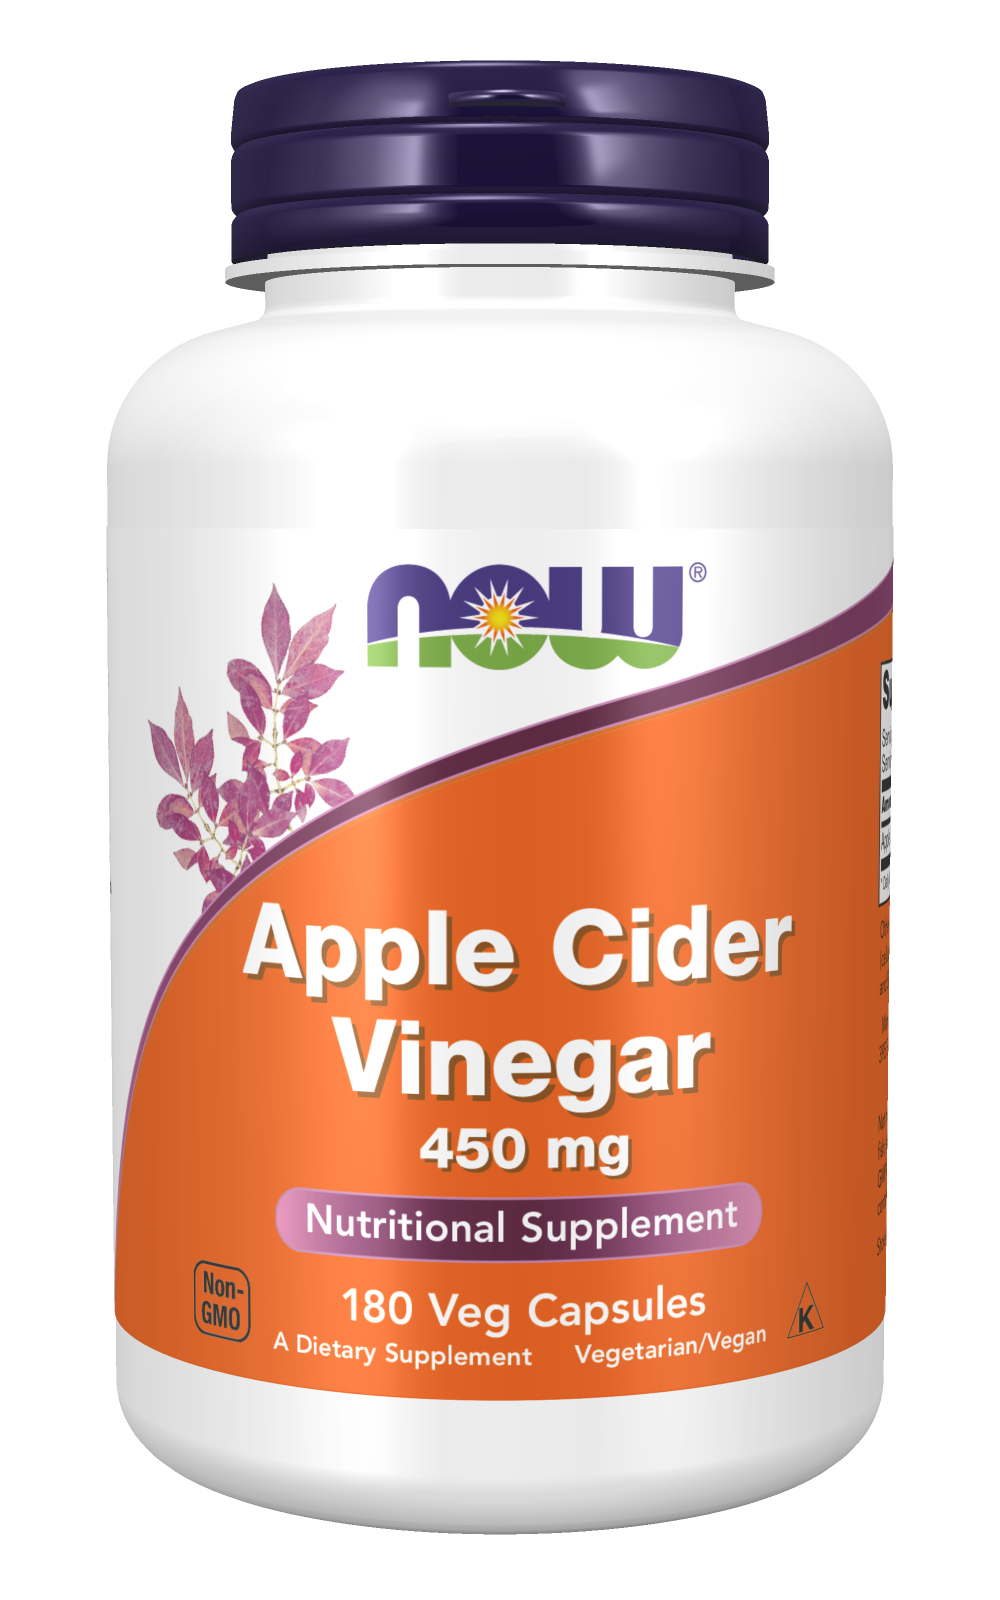 Apple Cider Vinegar 450 mg - 180 Veg Capsules Bottle Front